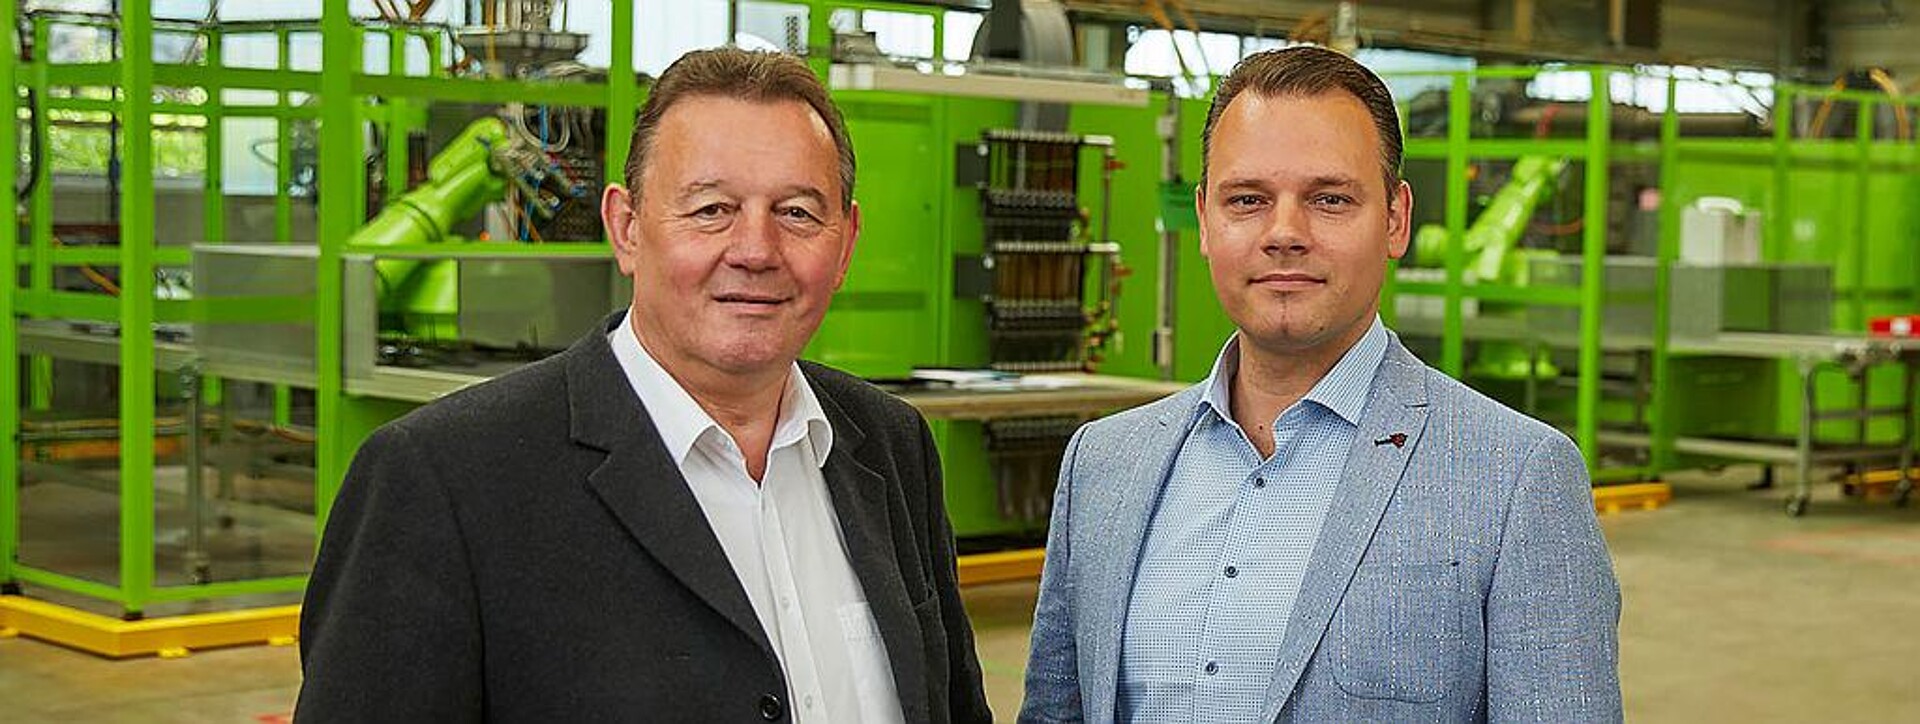 Die Geschäftsführer Vladimir und Marcel Mayer sind von der FDU-Technik überzeugt. (Foto: Mayer)